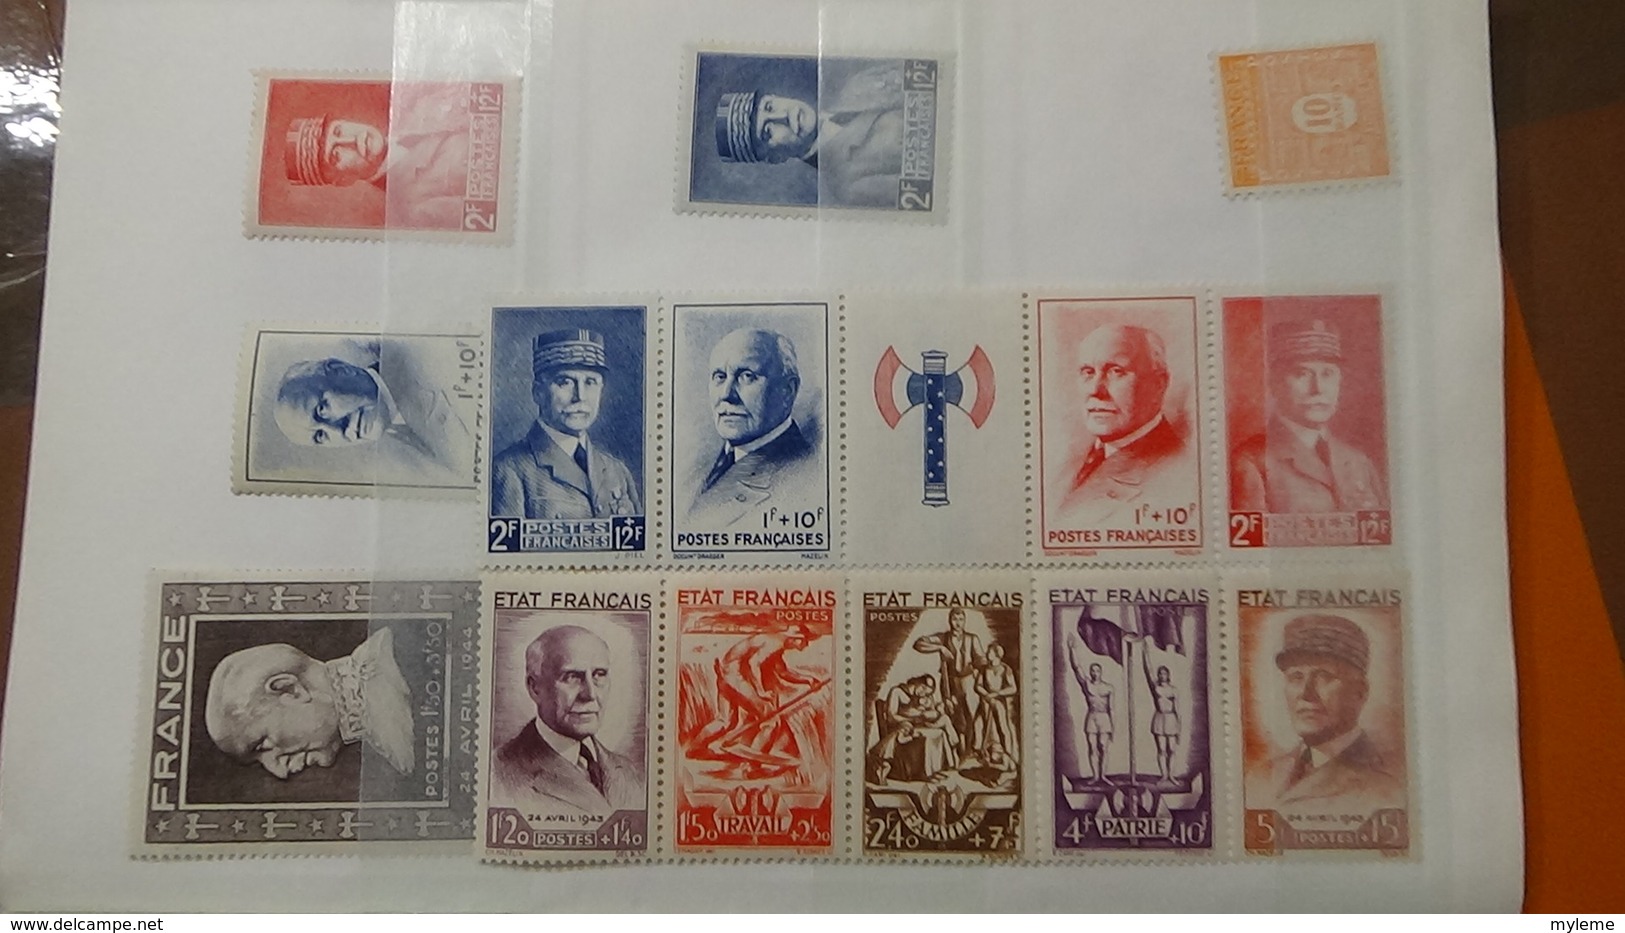 B407 Carnet à choix de timbres ** de France. Côte plus de 1300 euros. A saisir !!!